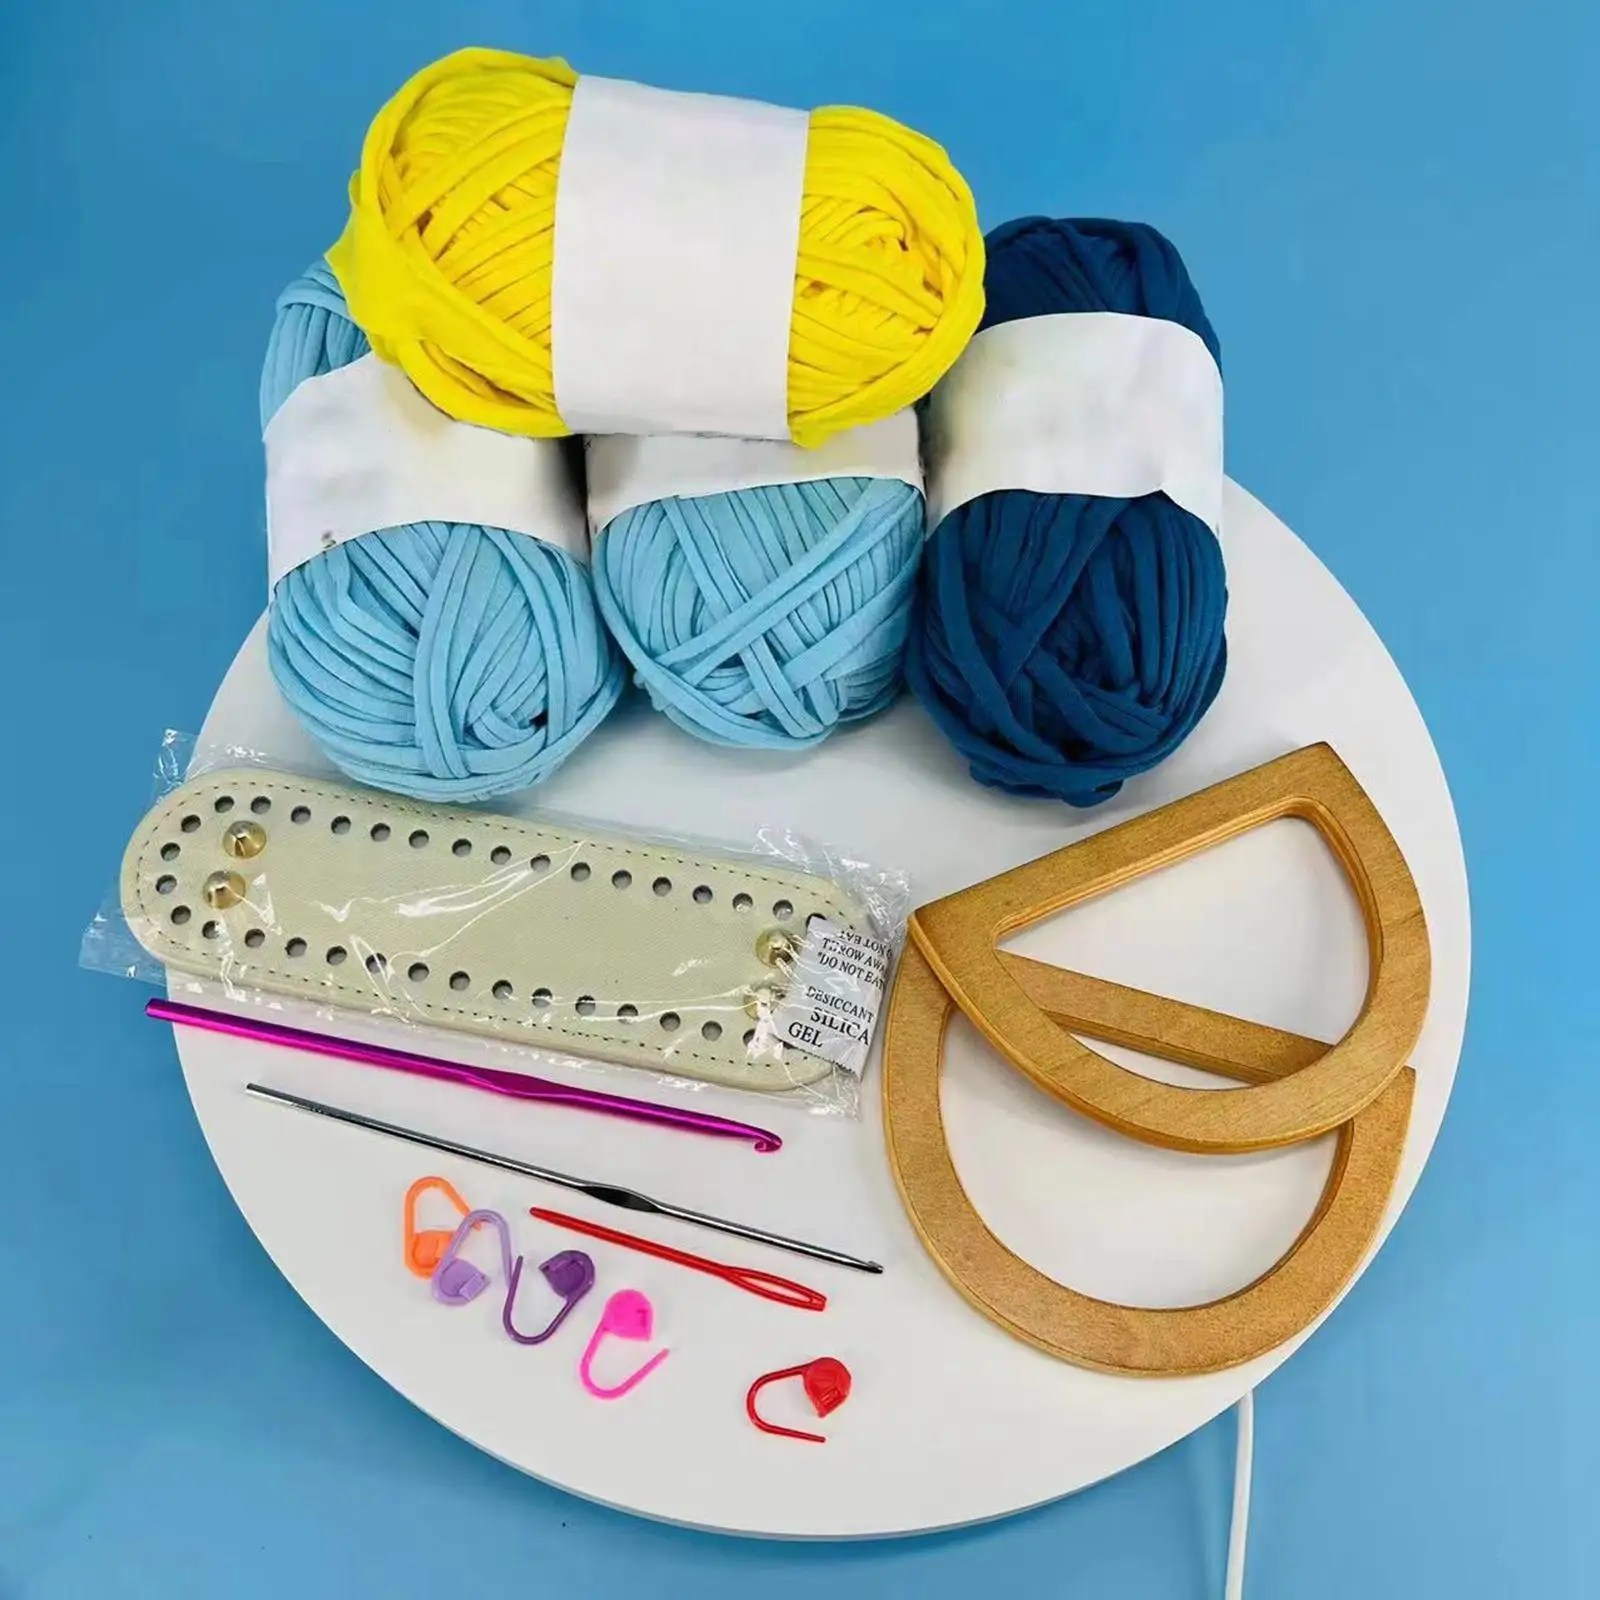 4 Rolls Weaving Thread Bag Making Crochet Hooks Hand Knitting for Handmade Bag Handbag Purse Carpet